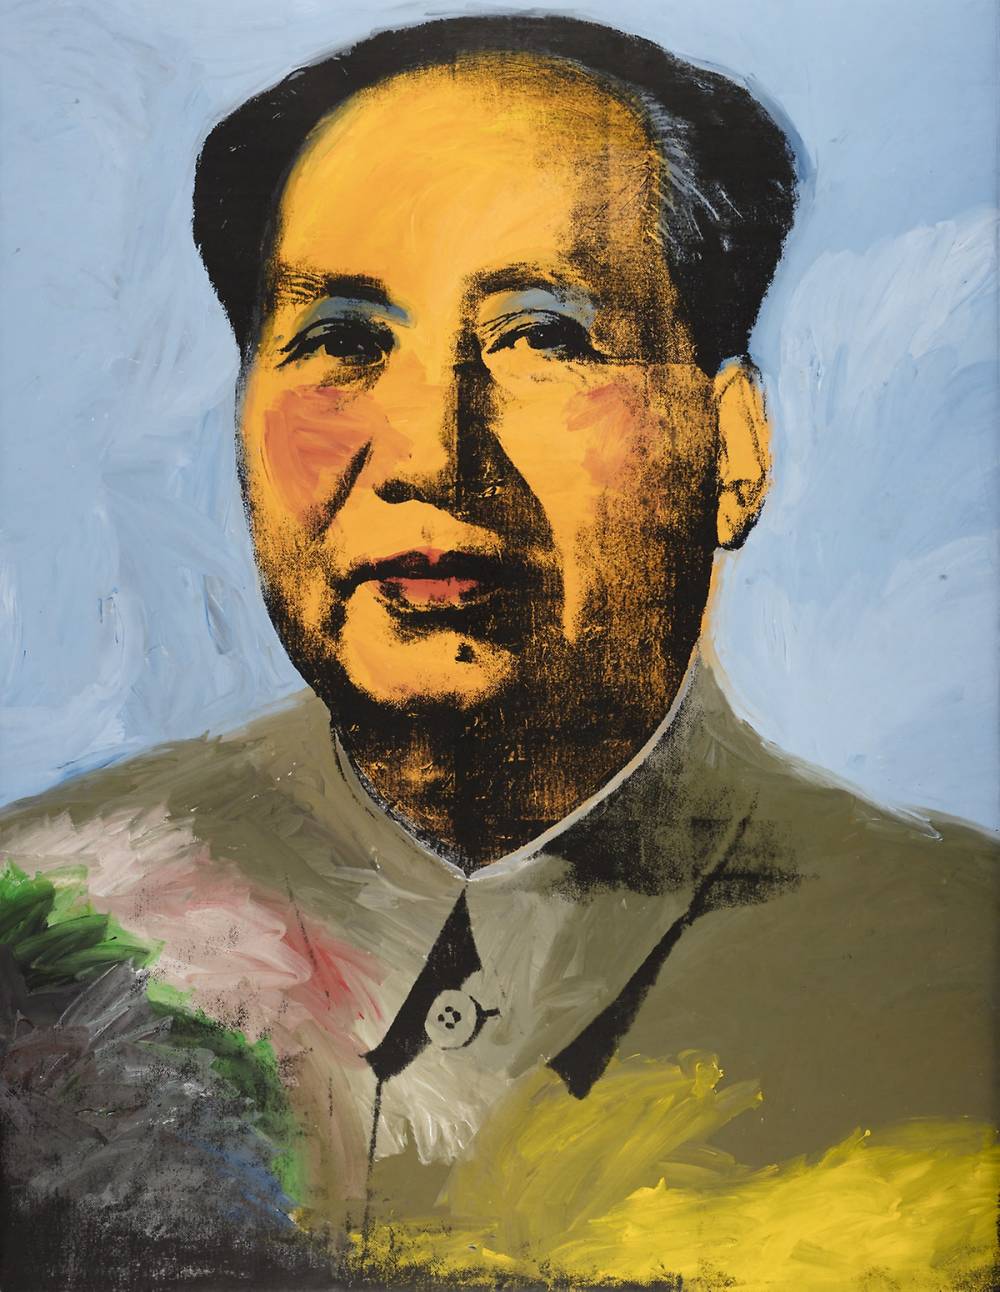  Andy Warhol, Mao, 1972 